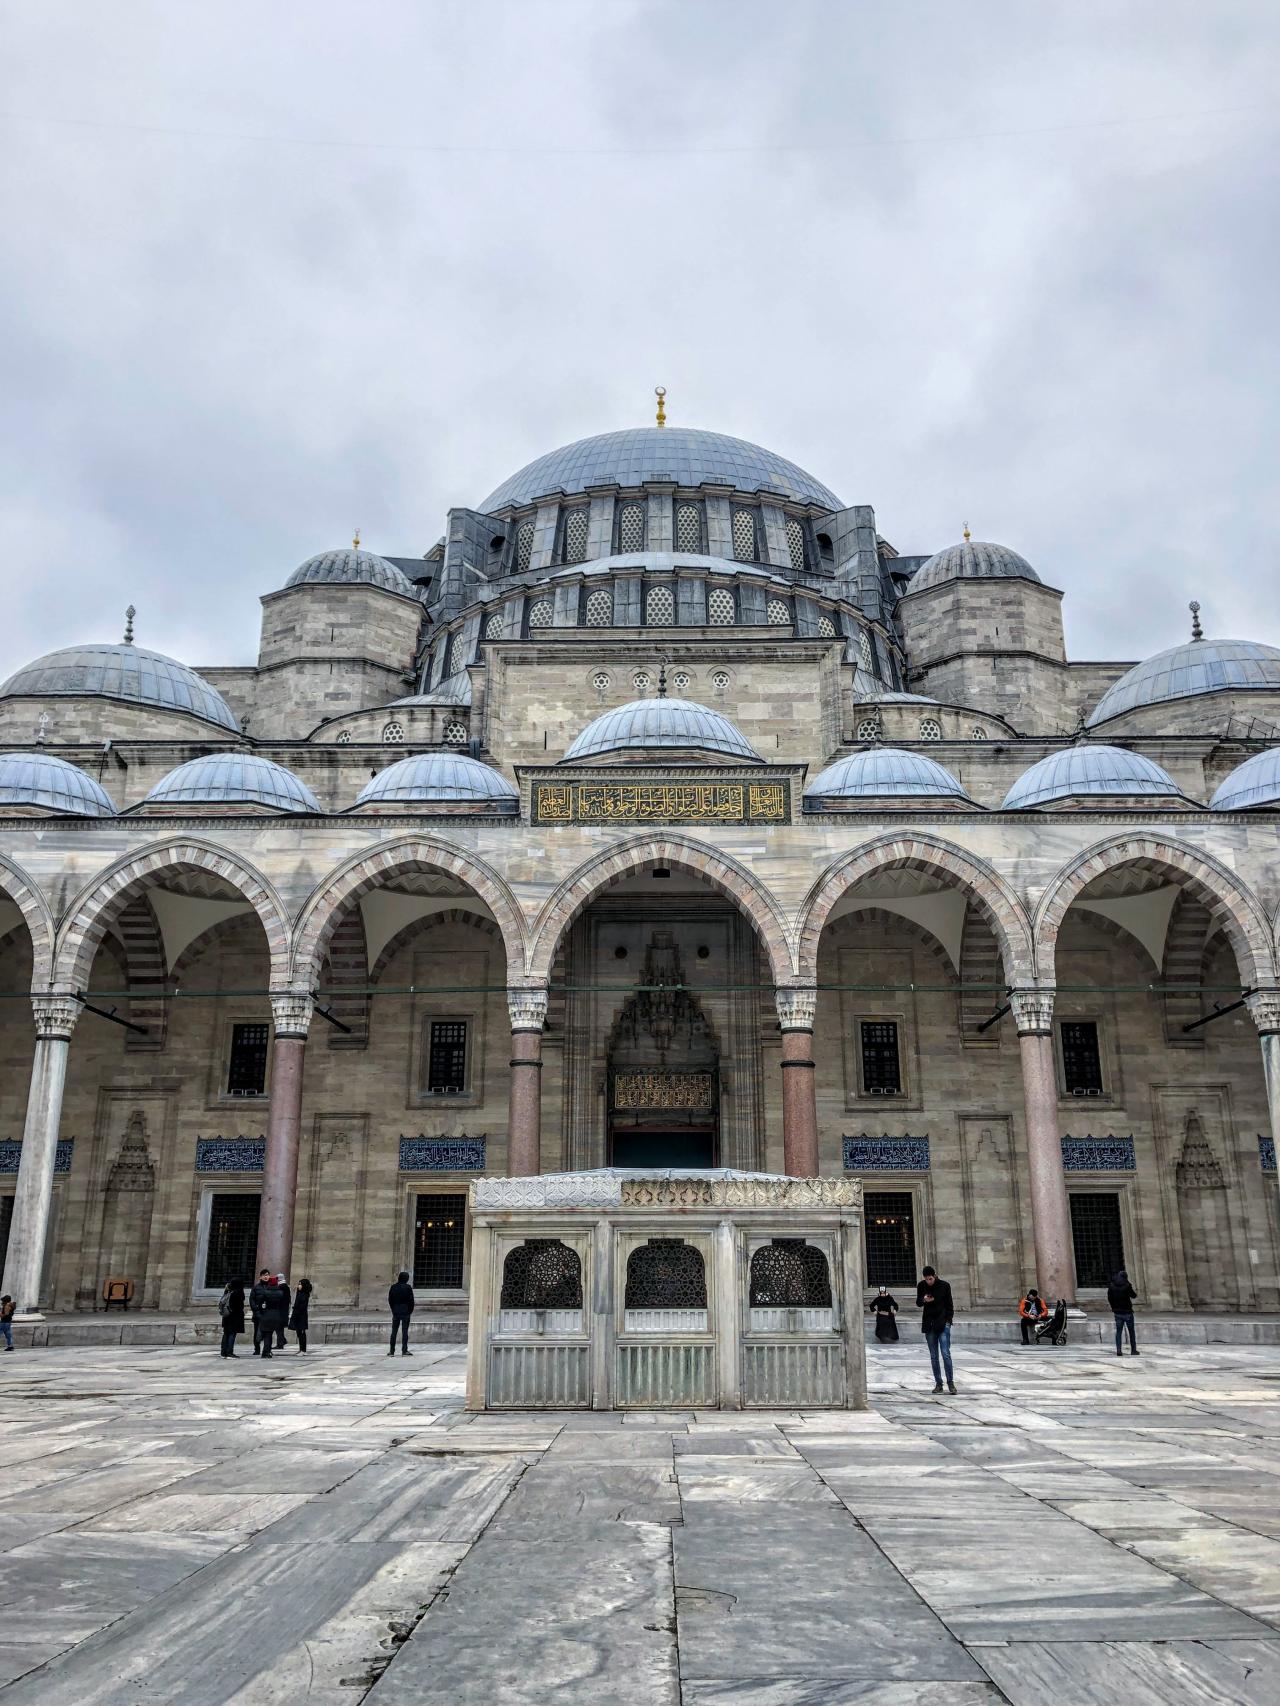 ۱۴ نکته مسافرتی که باید قبل از رفتن به استانبول بدانید